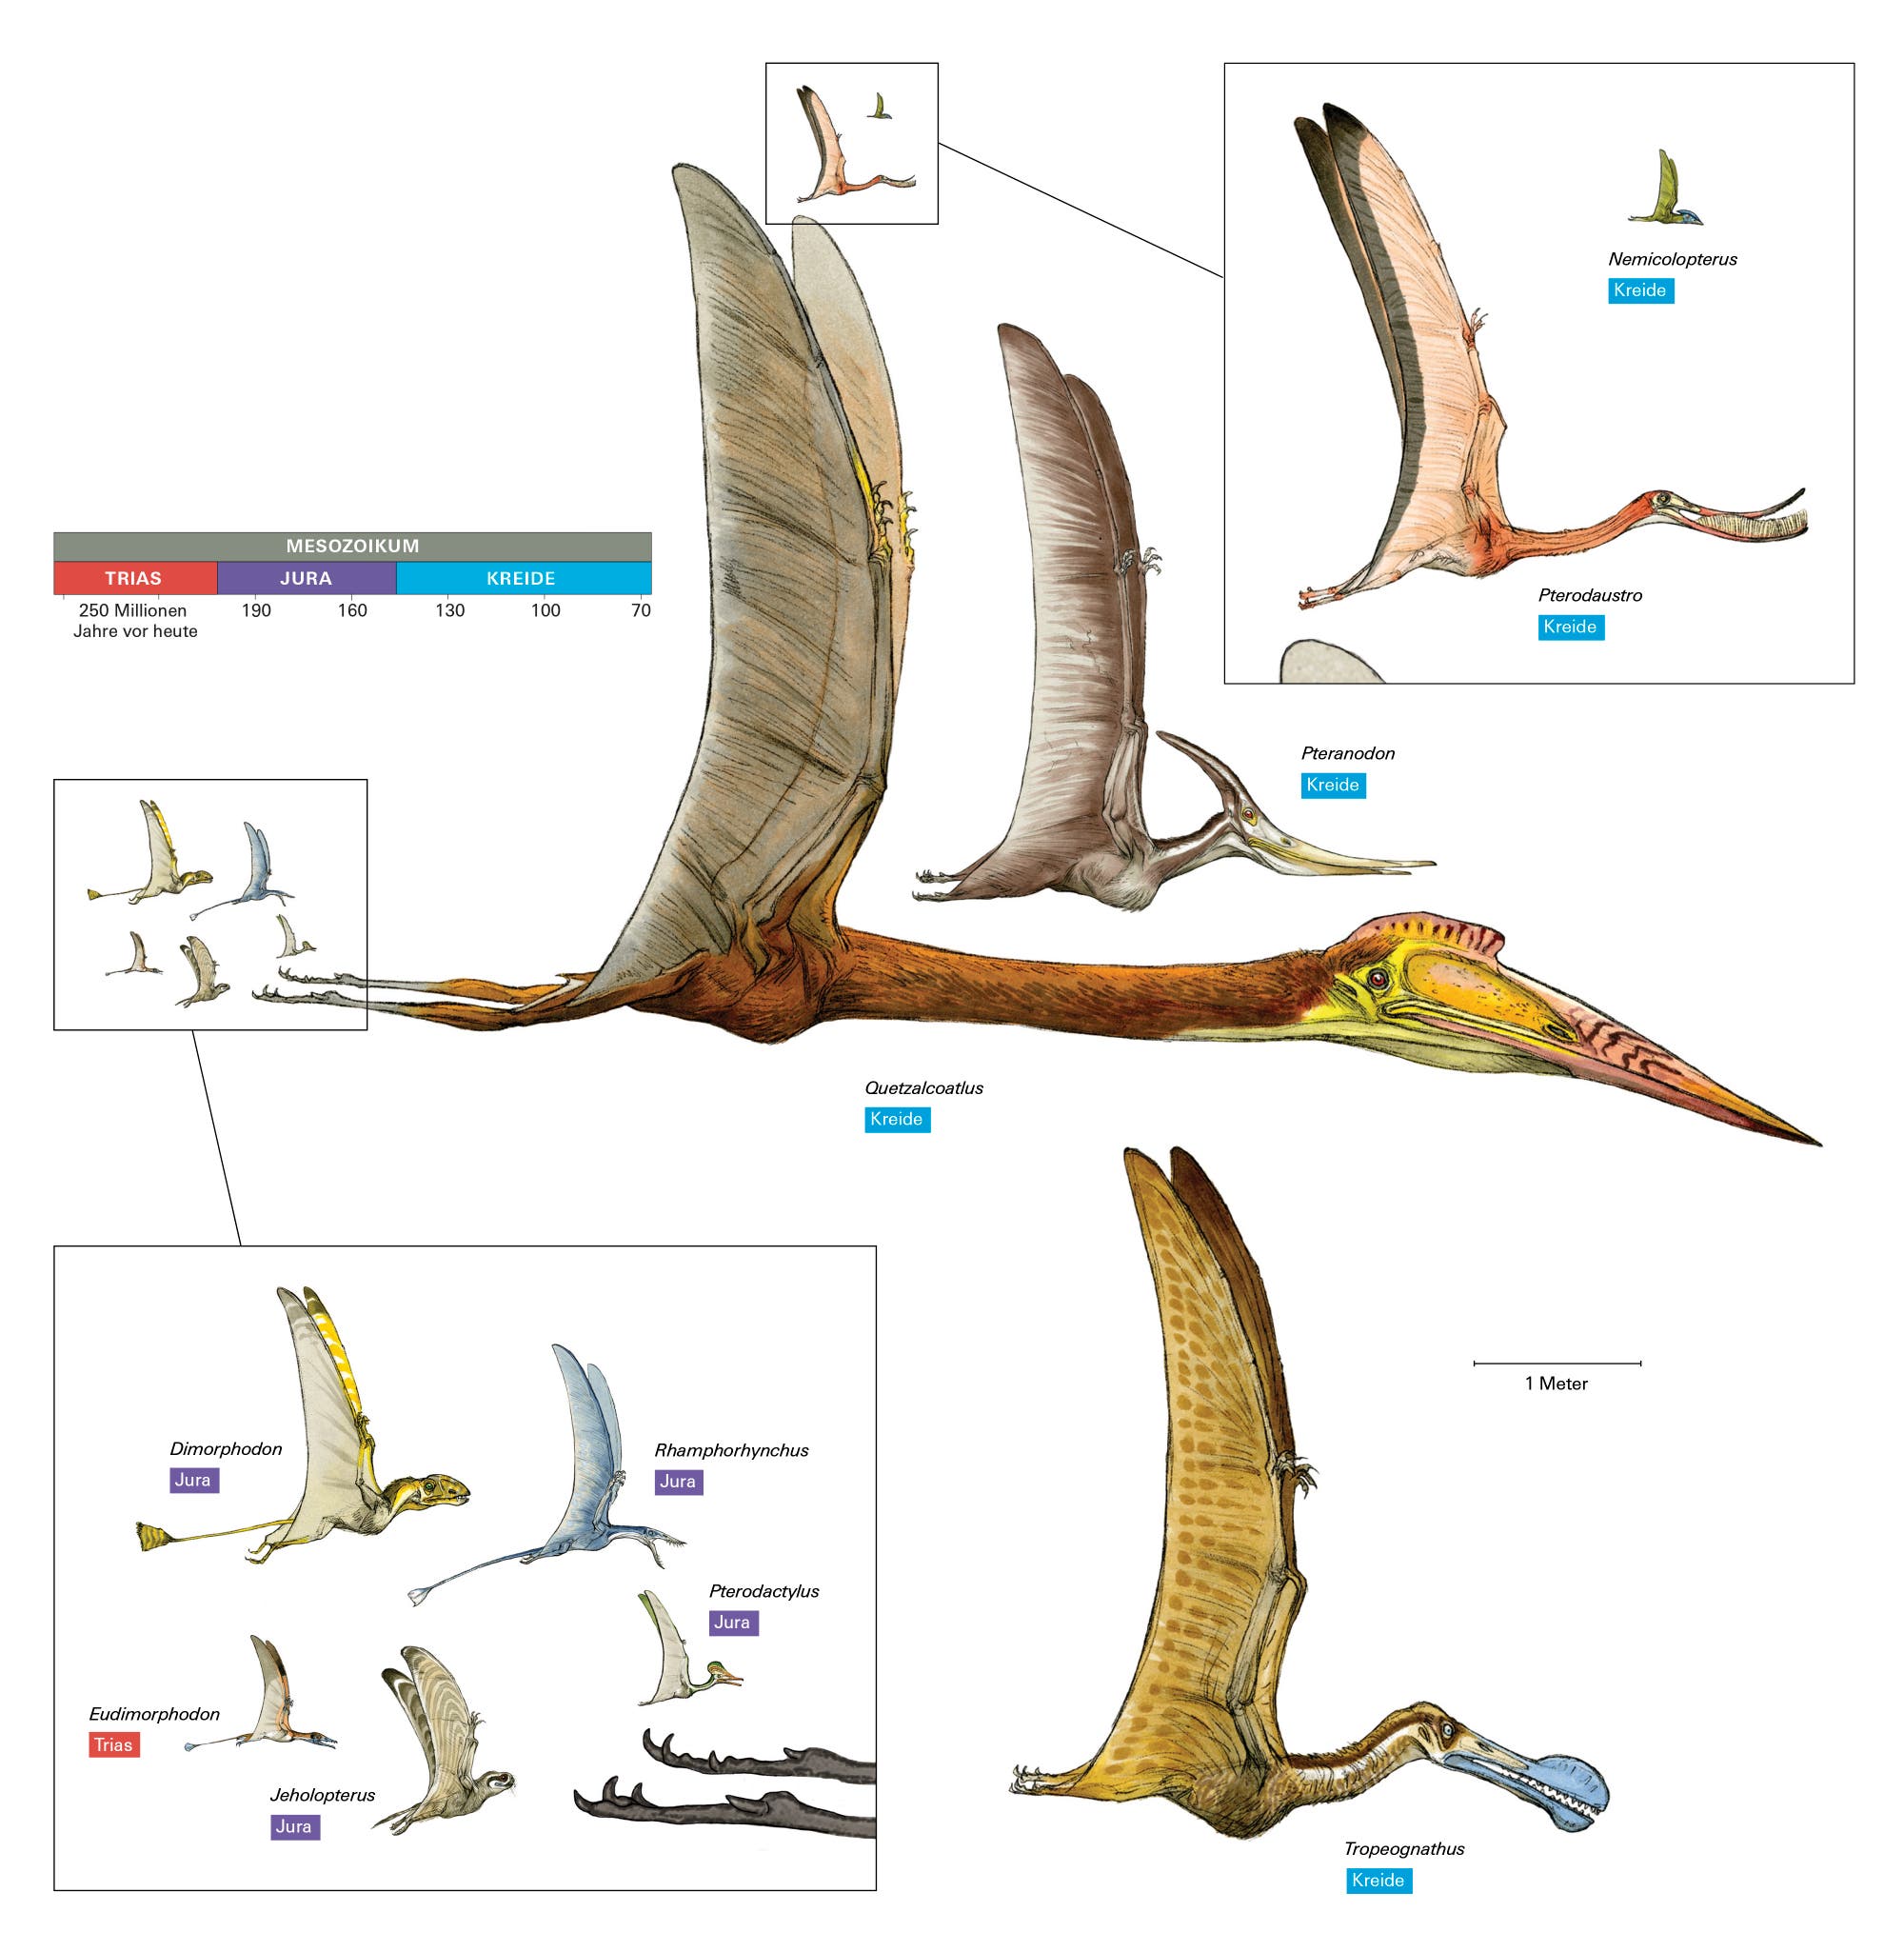 Groß und gruselig: Sämtliche Pterosaurier besaßen eigenartige Proportionen.